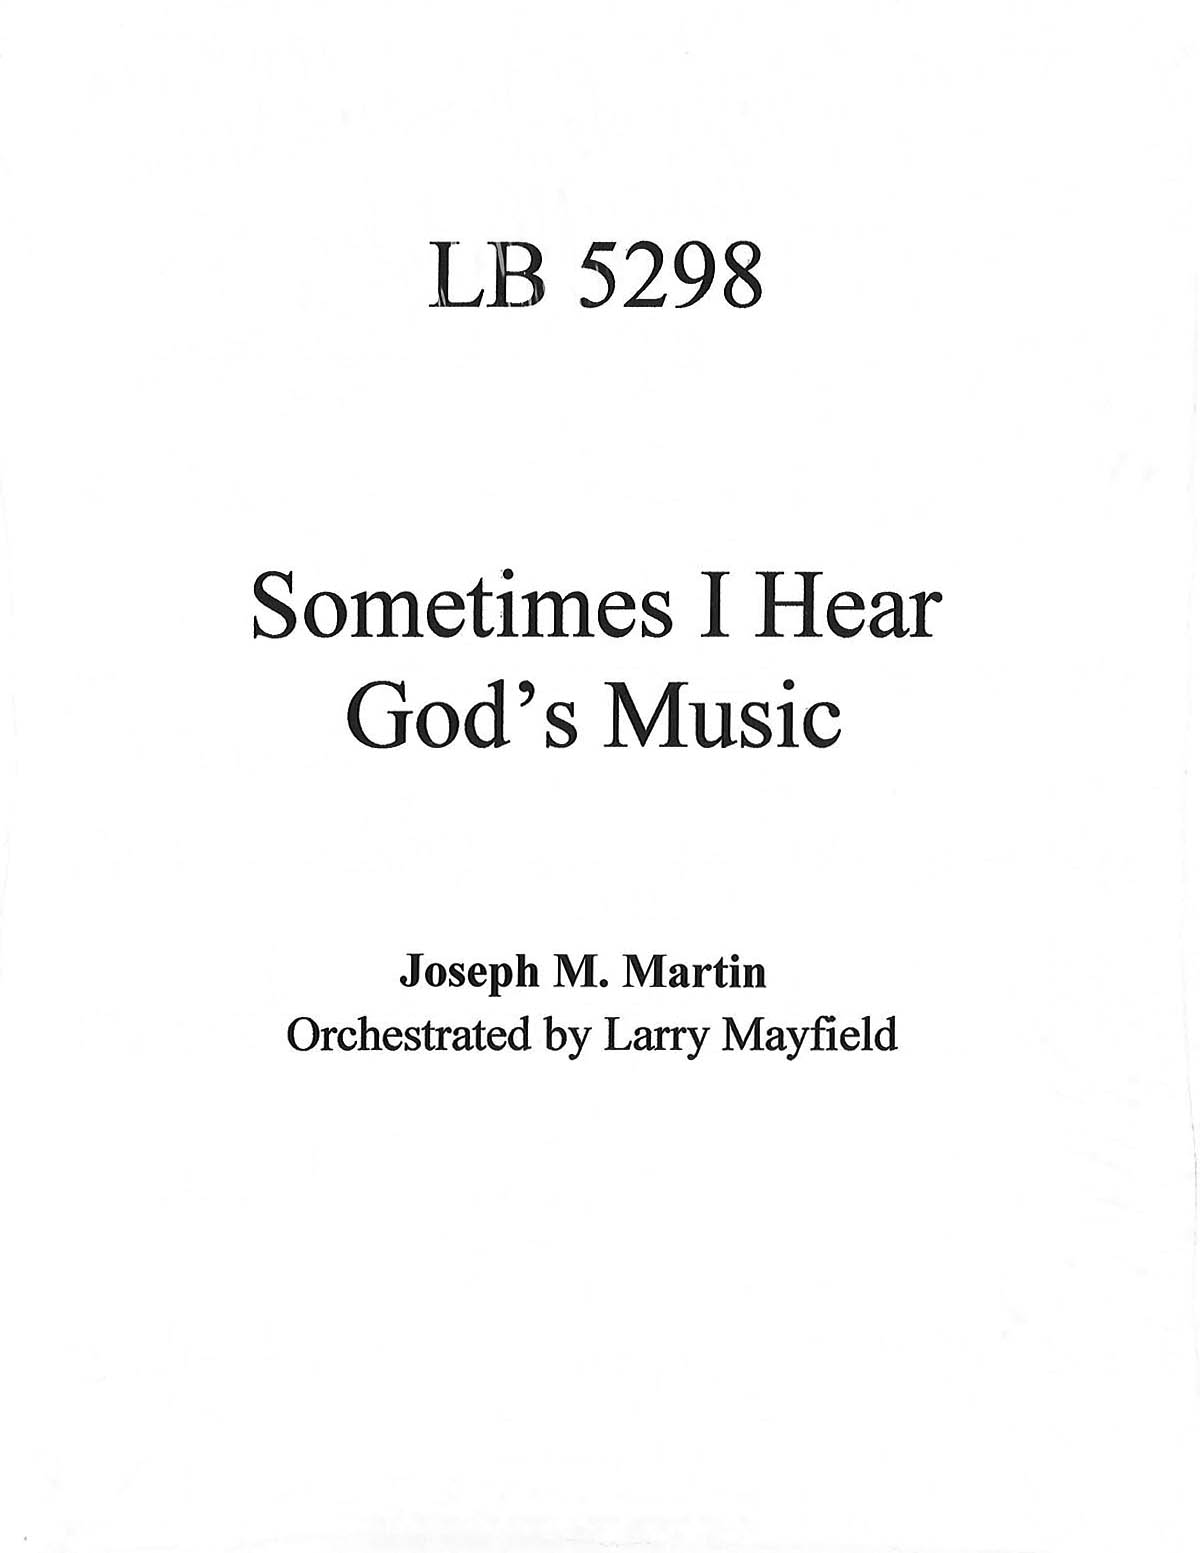 Joseph M. Martin: Sometimes I Hear God's Music: Orchestra: Parts